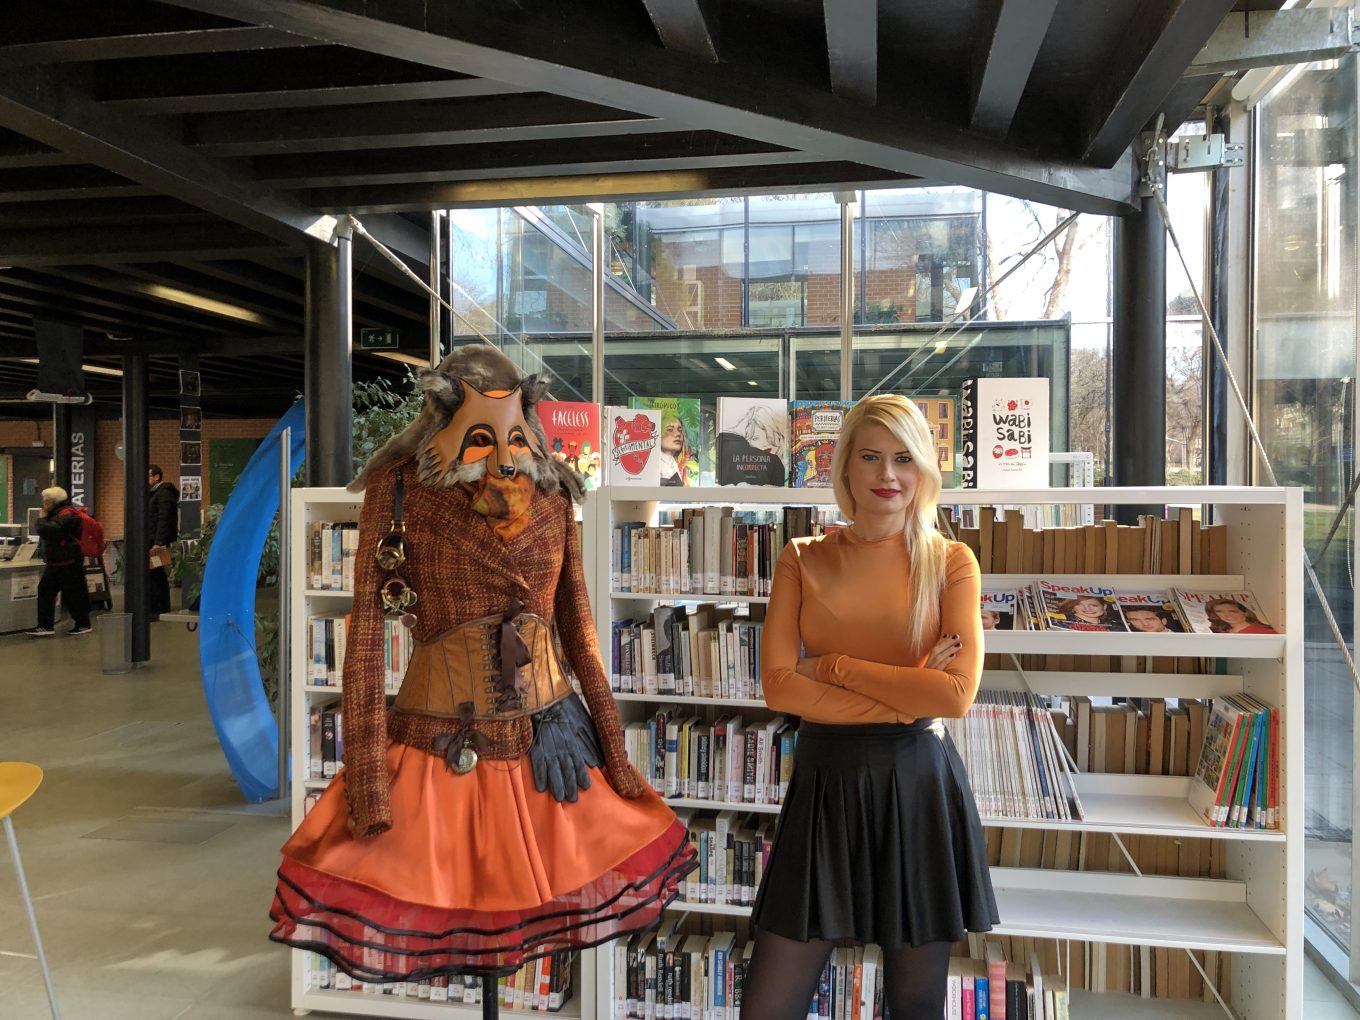 Diseñadora posa con maniquí en biblioteca